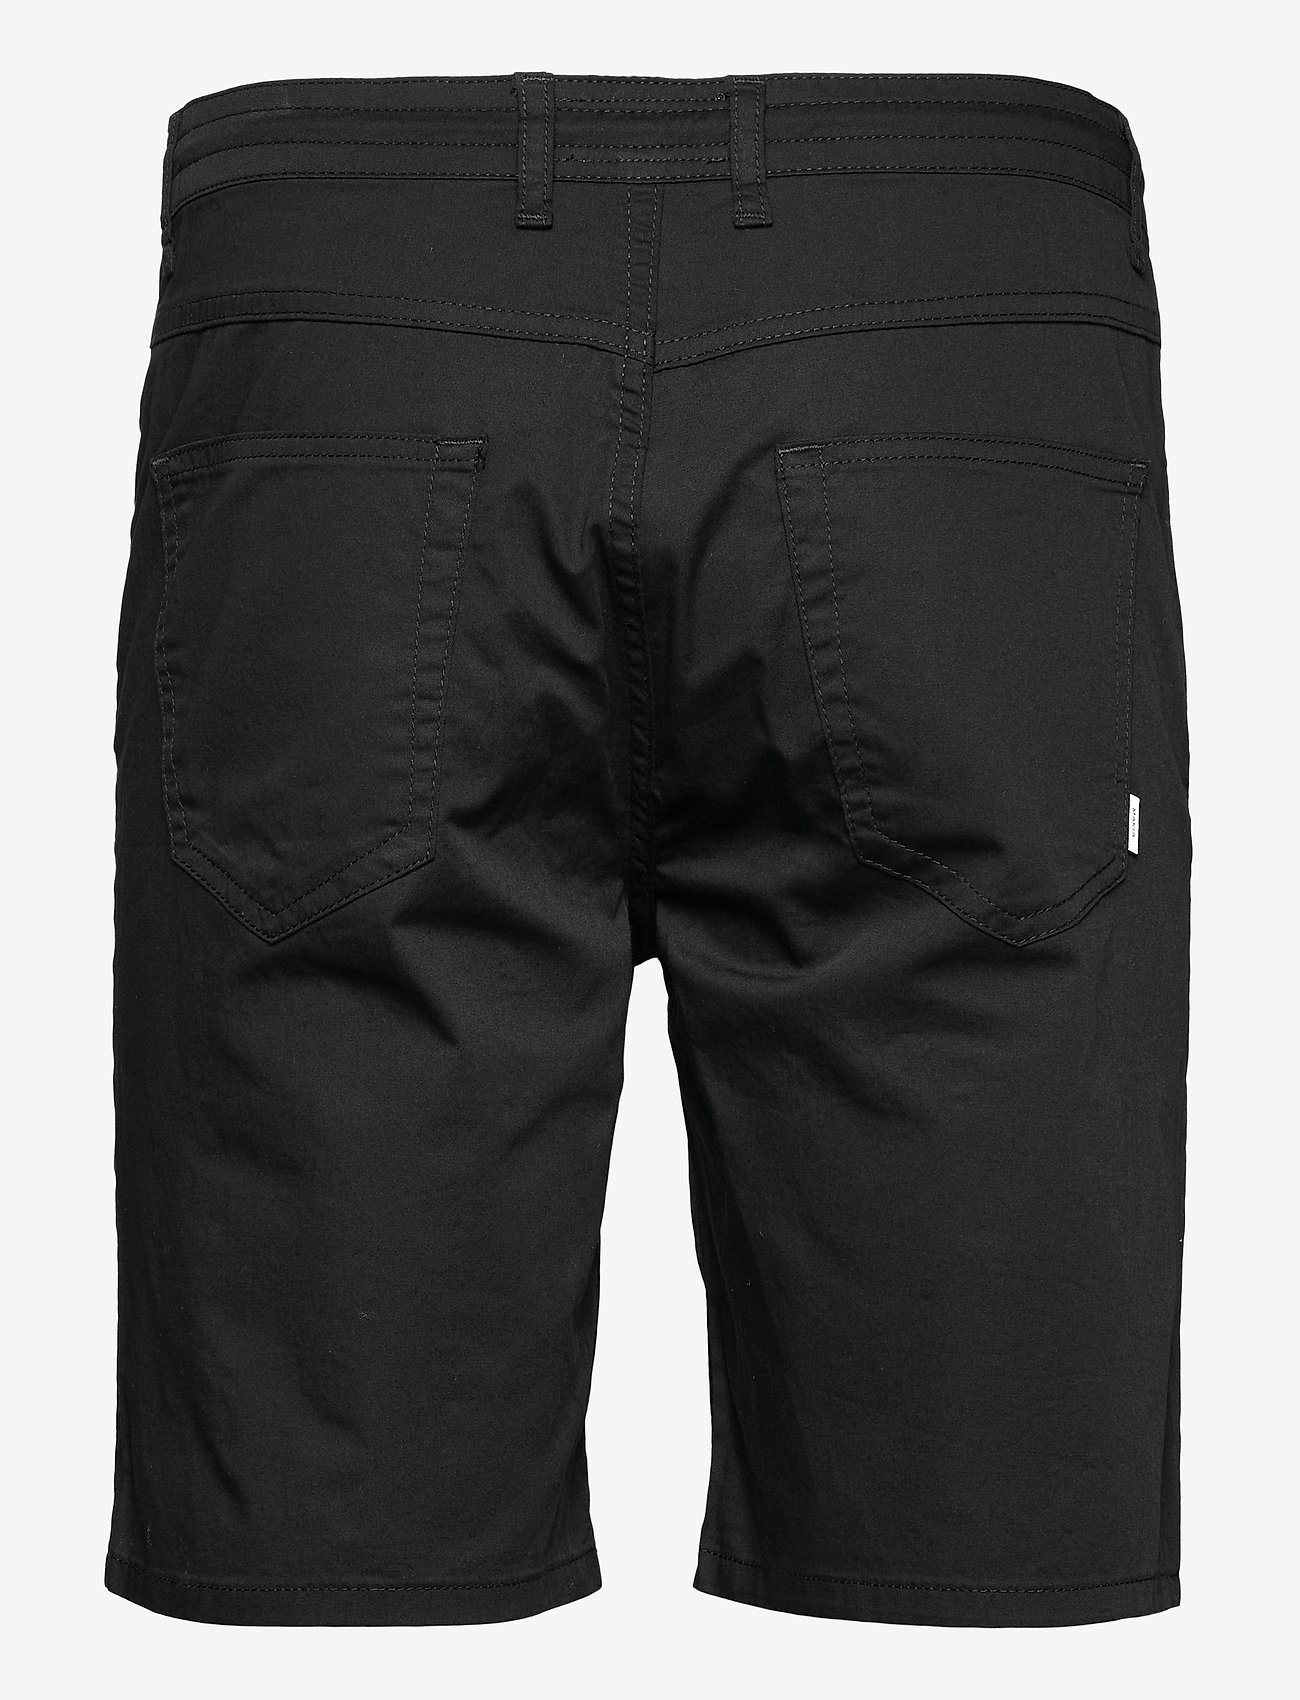 Makia - Border Shorts - chino lühikesed püksid - black - 1